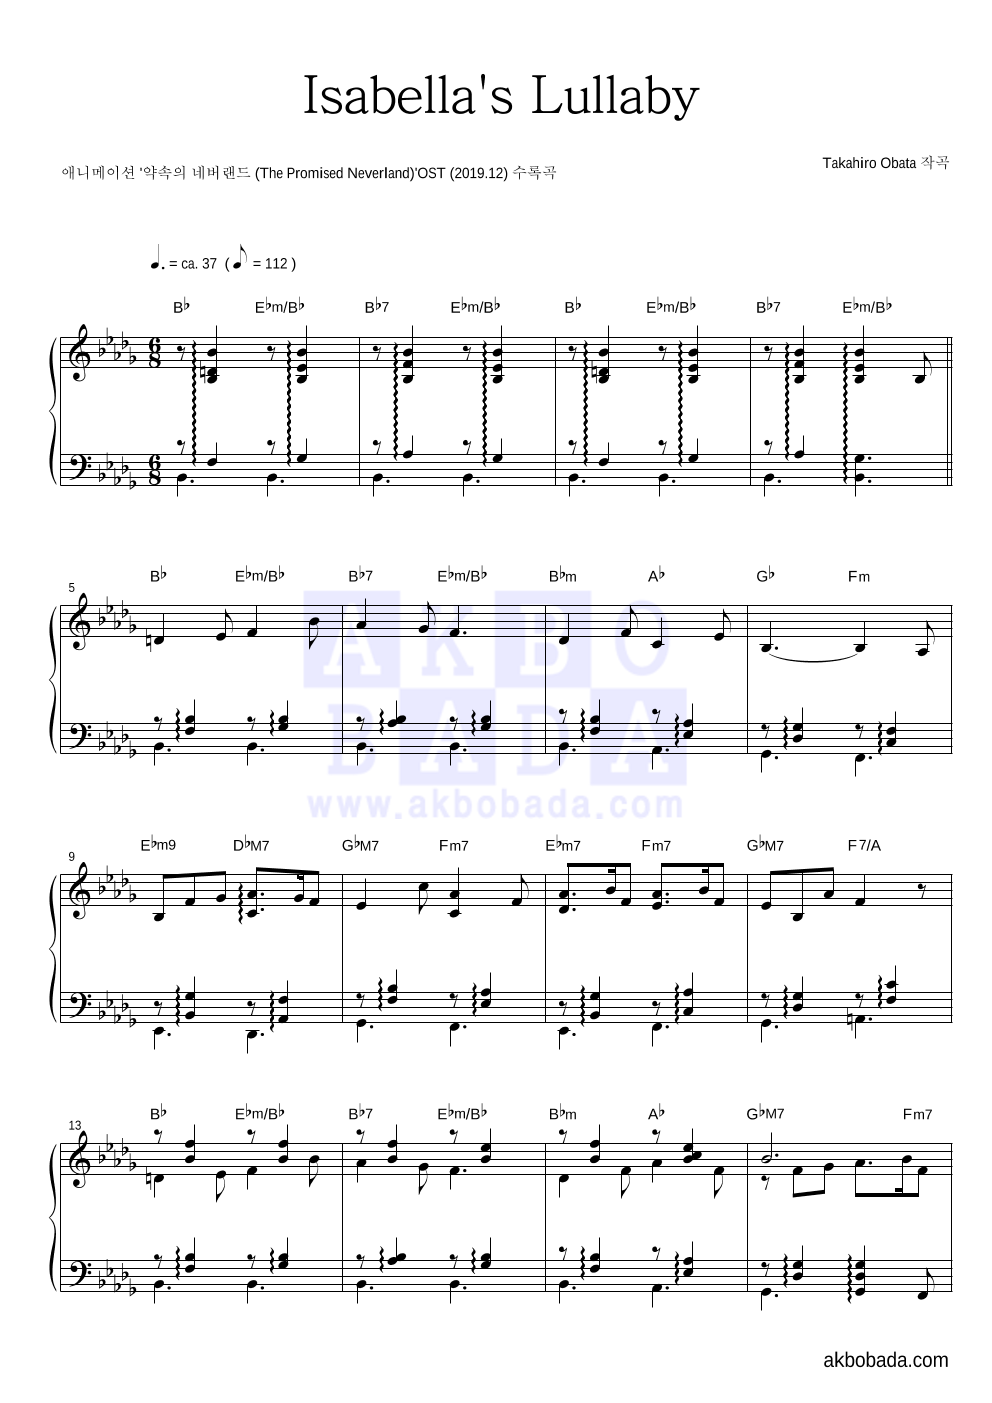 약속의 네버랜드 OST - Isabella's Lullaby 피아노 2단 악보 